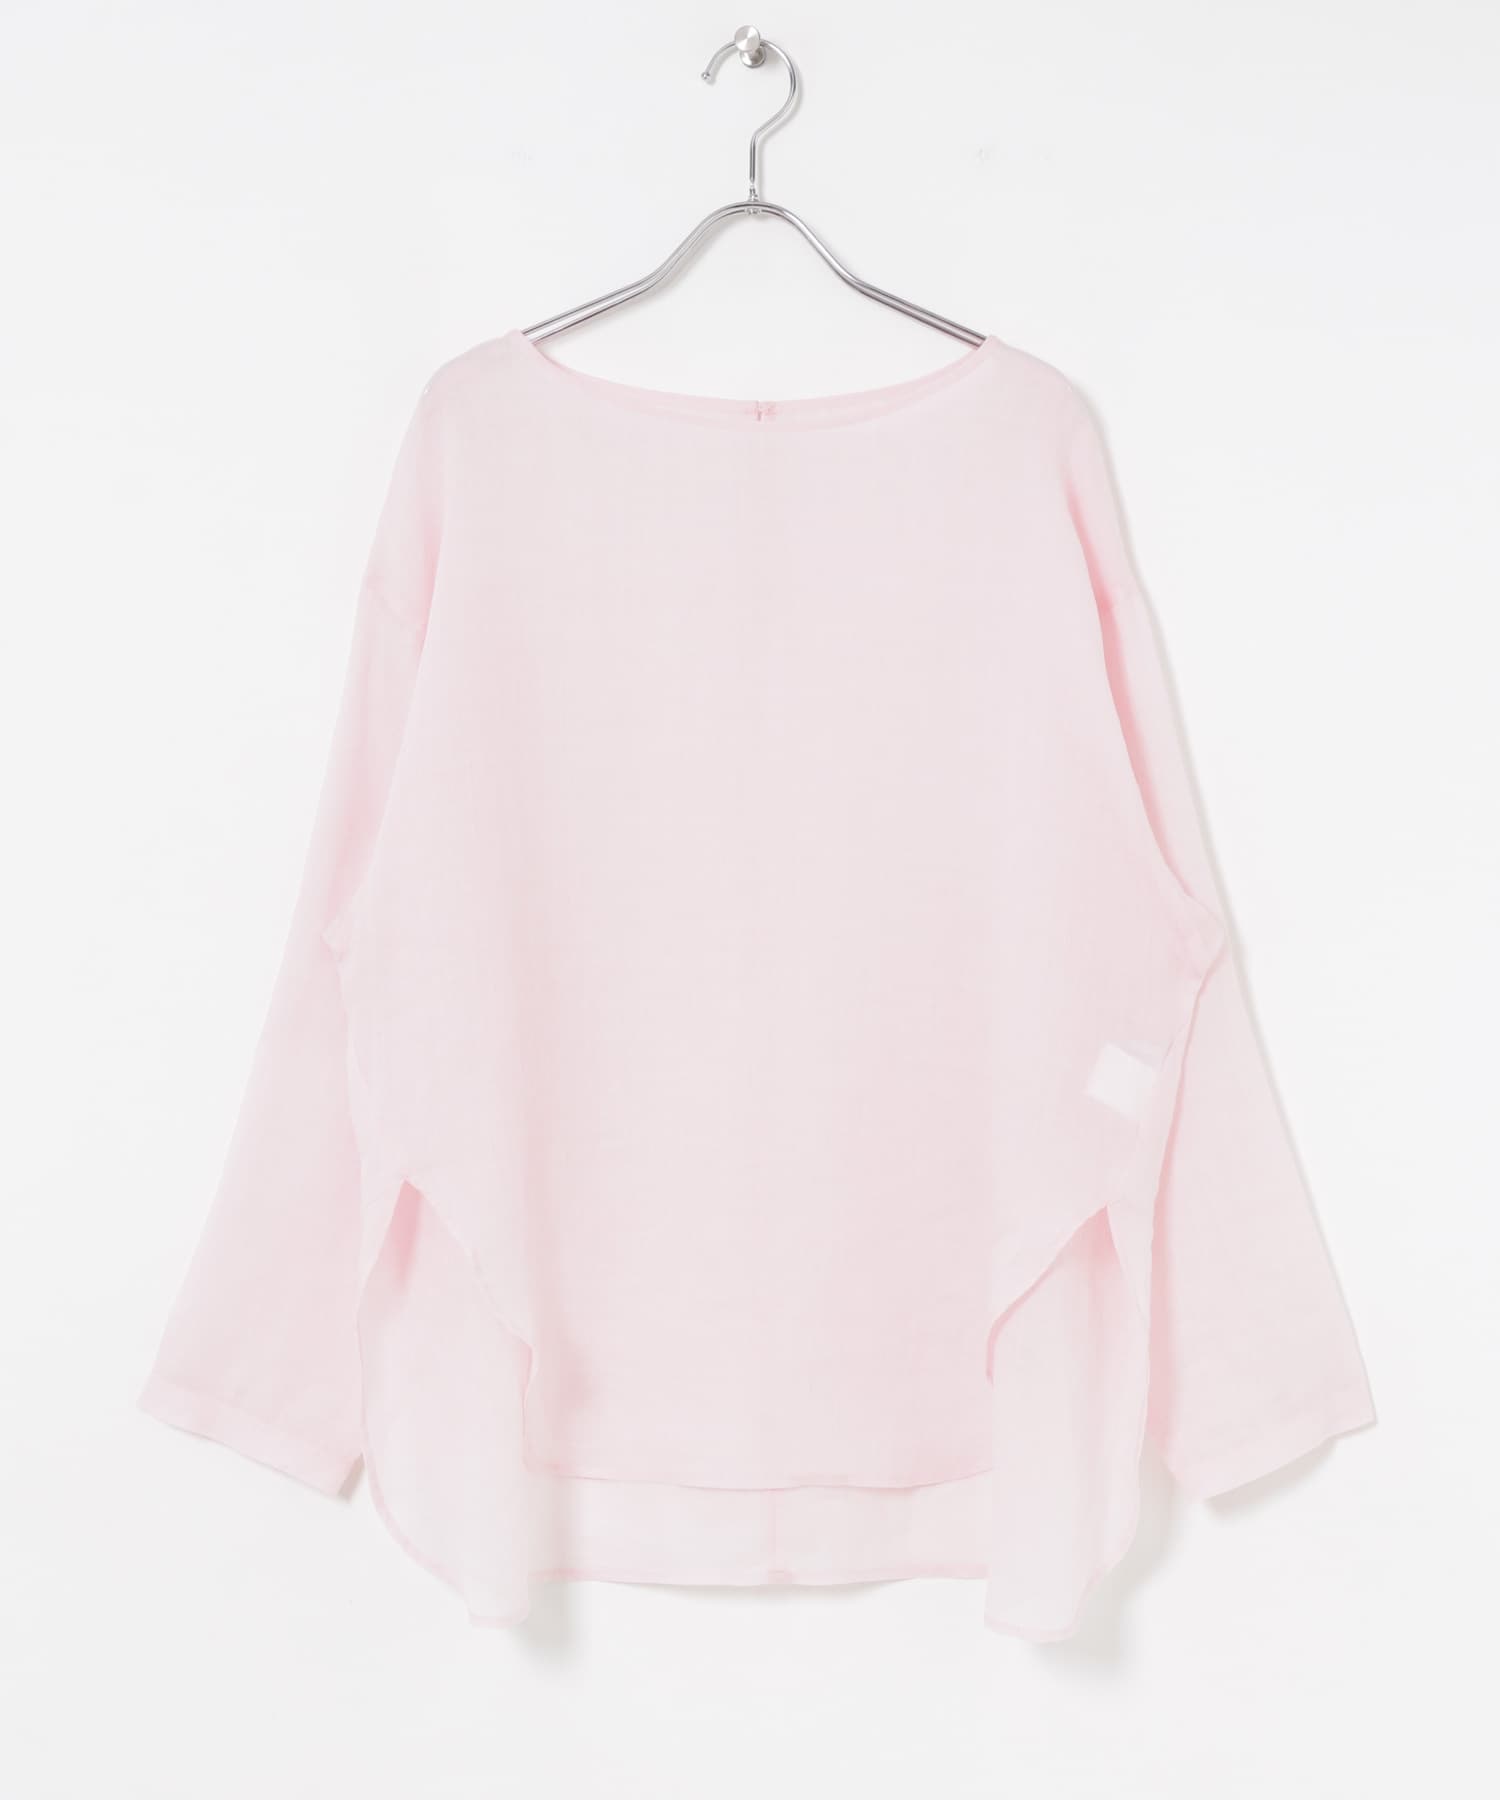 苧麻罩衫(淺粉紅色-FREE-LIGHT PINK)